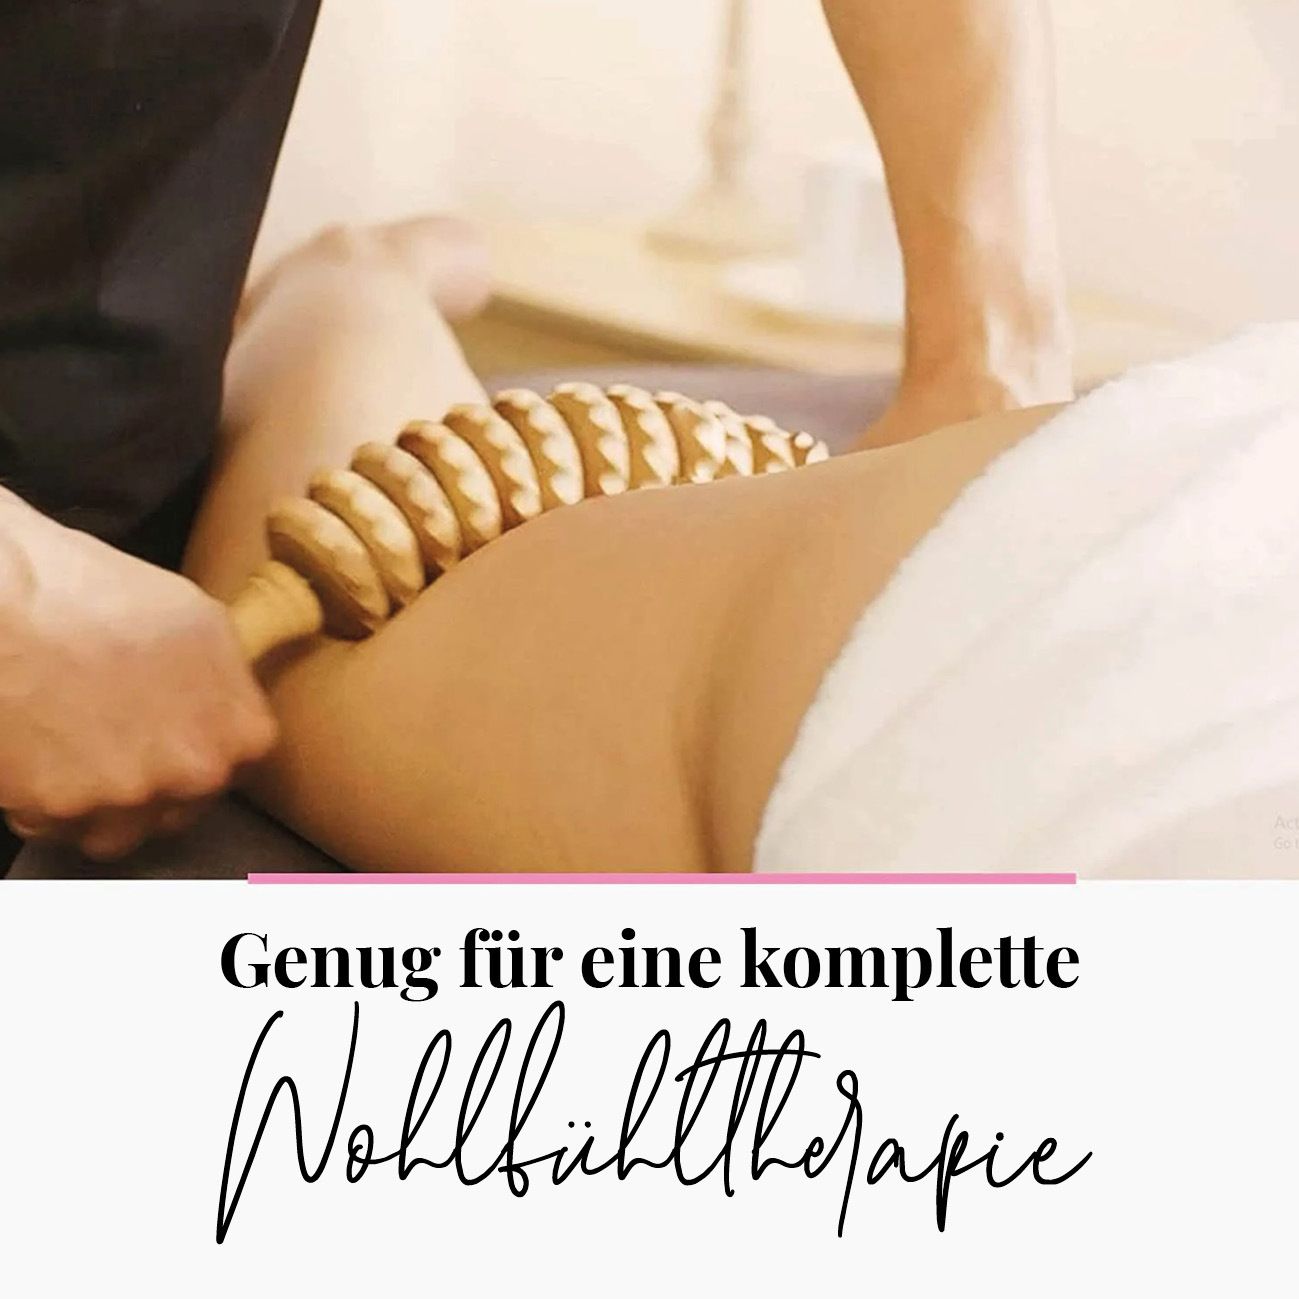 tuuli Anti Cellulite Roller mit Griff Massagegerät aus Holz Massageroller für Maderotherapie